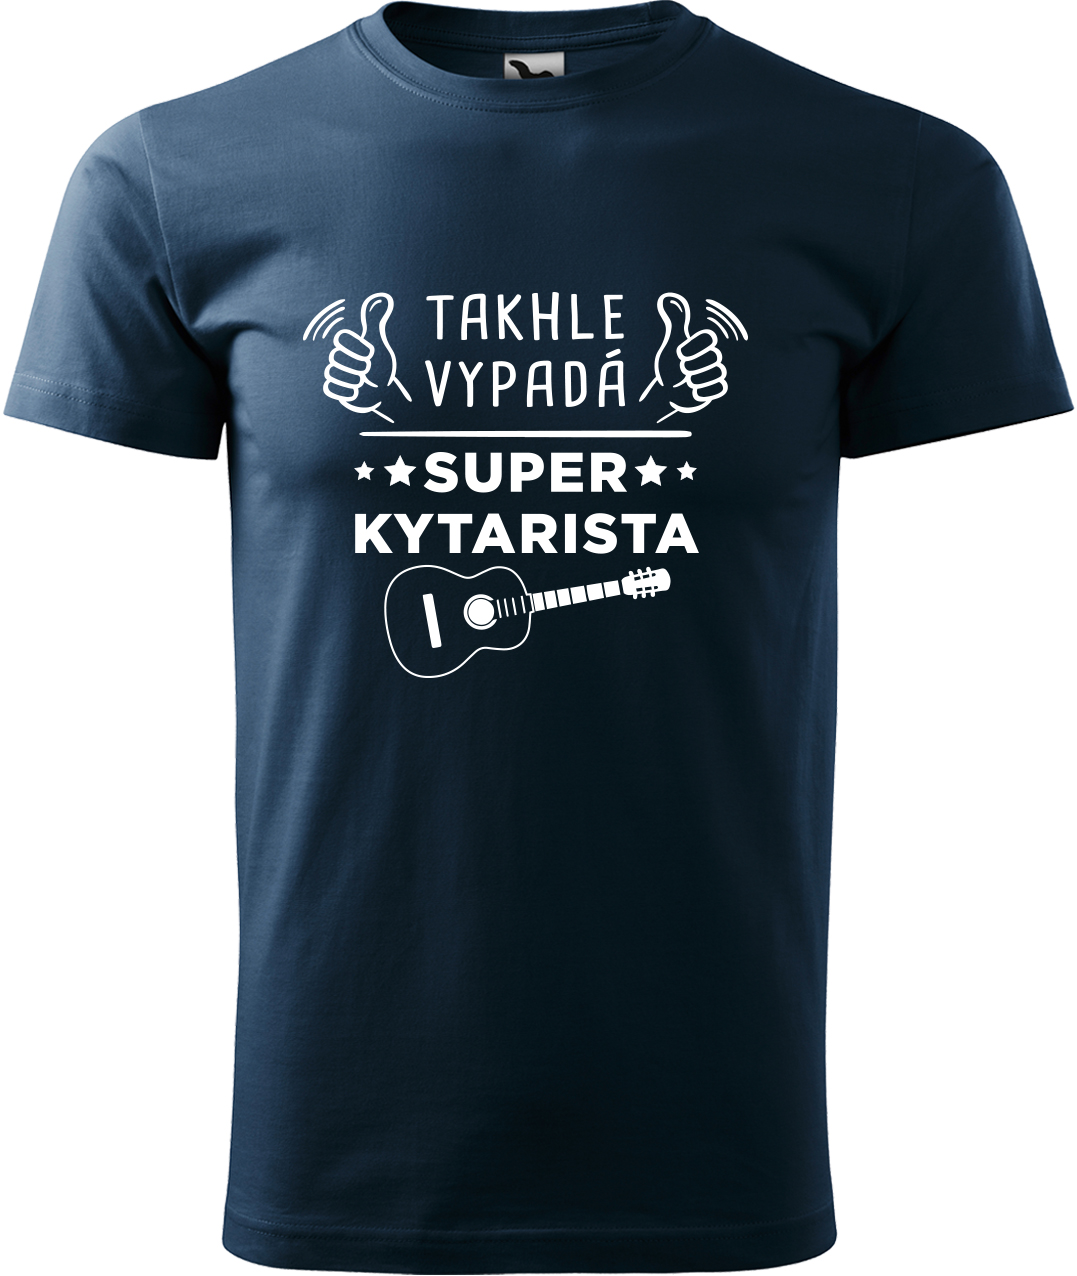 Pánské tričko s kytarou - Super kytarista Velikost: XL, Barva: Námořní modrá (02), Střih: pánský